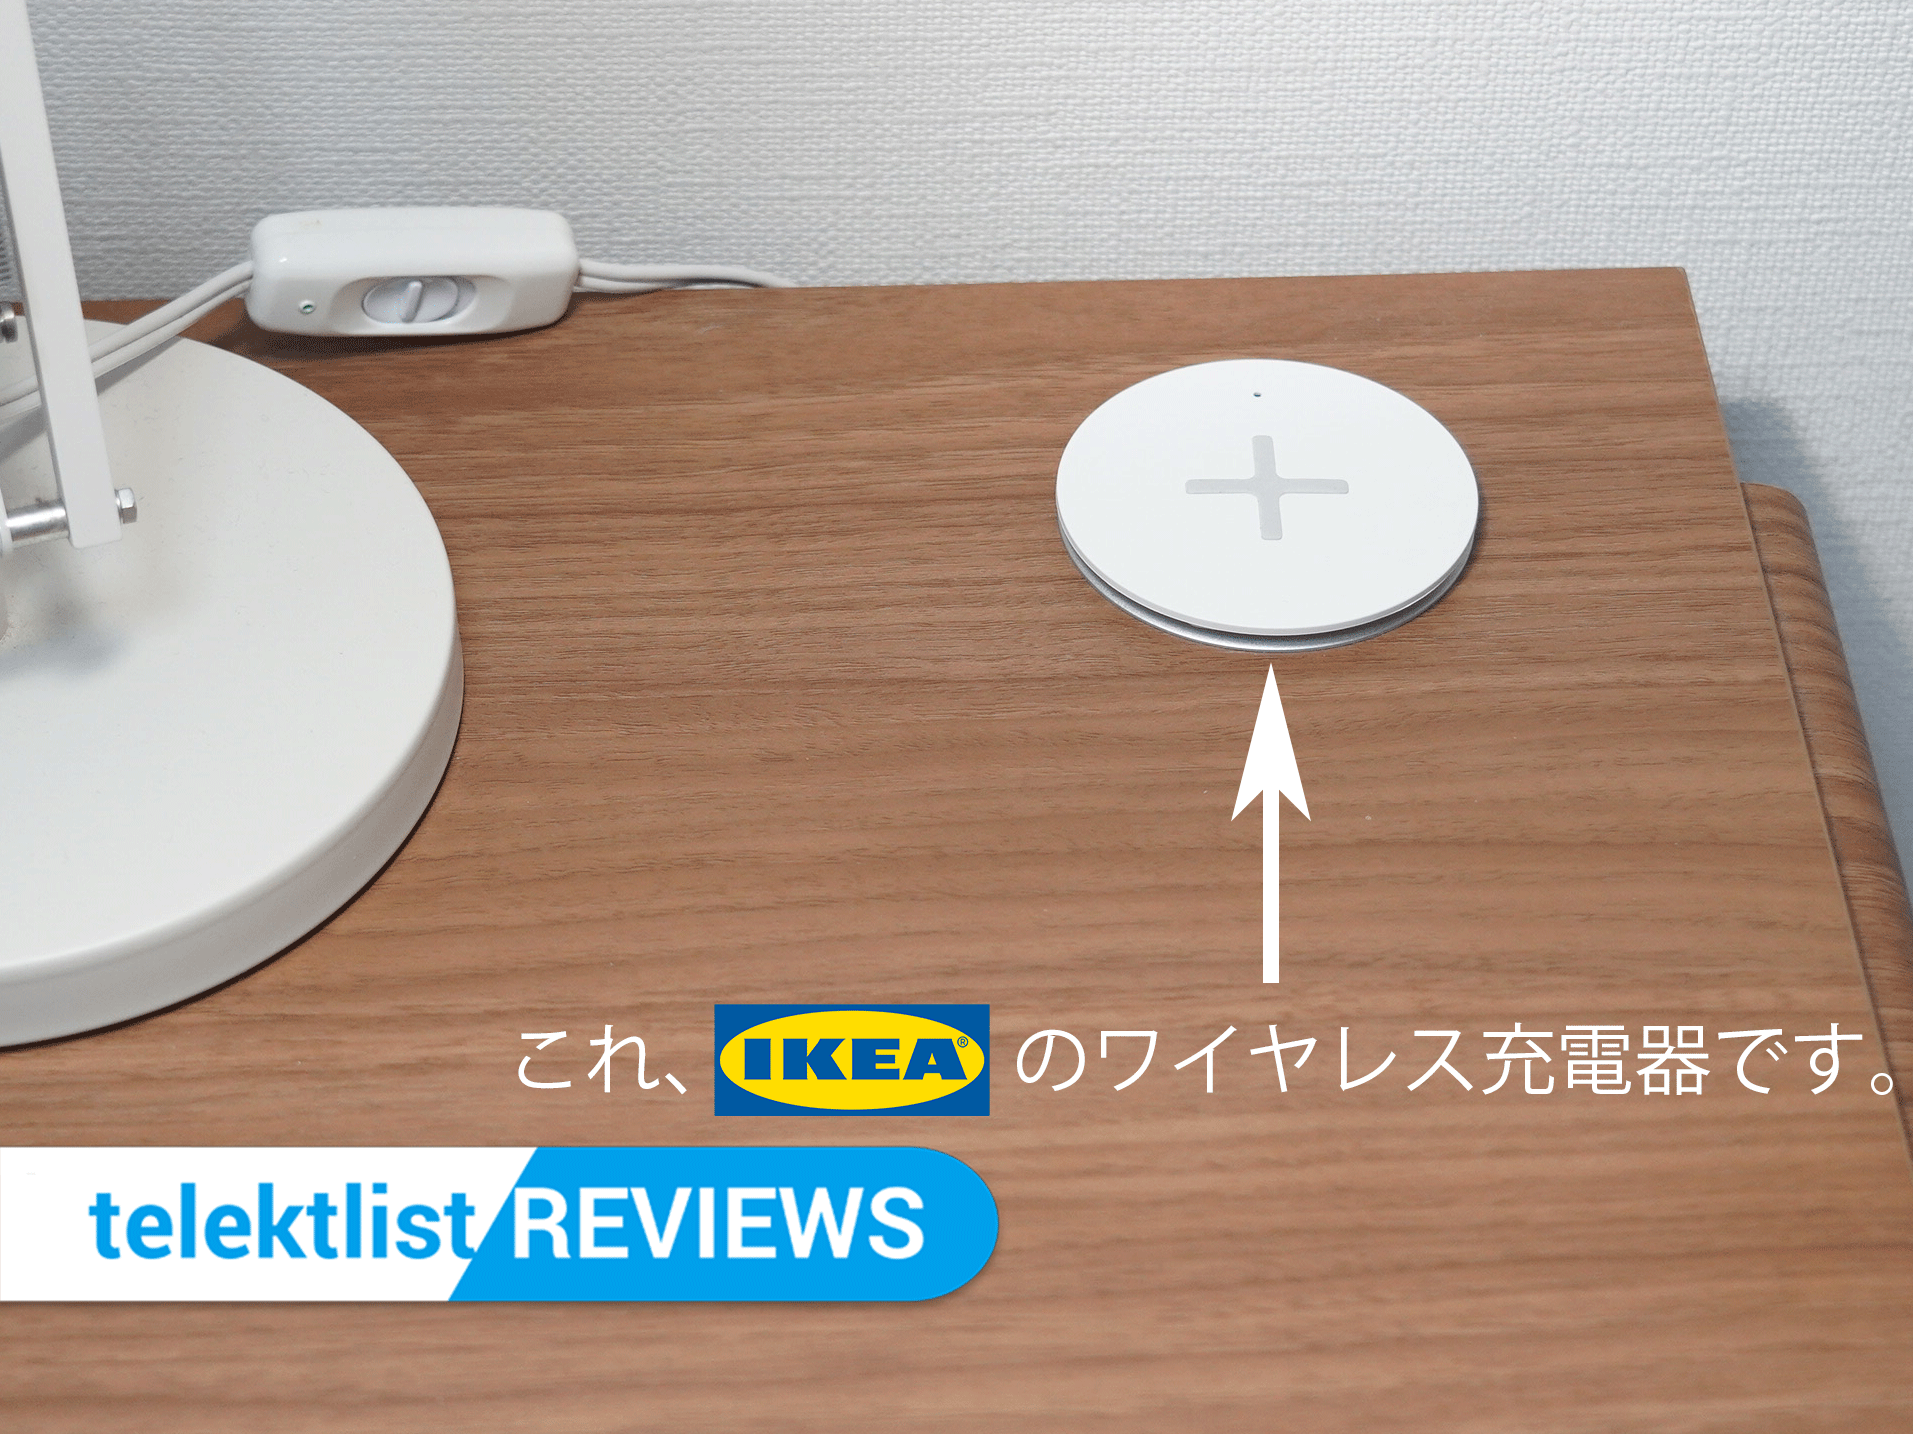 IKEAのワイヤレス充電器がスマートで便利な件について【レビュー】 telektlist